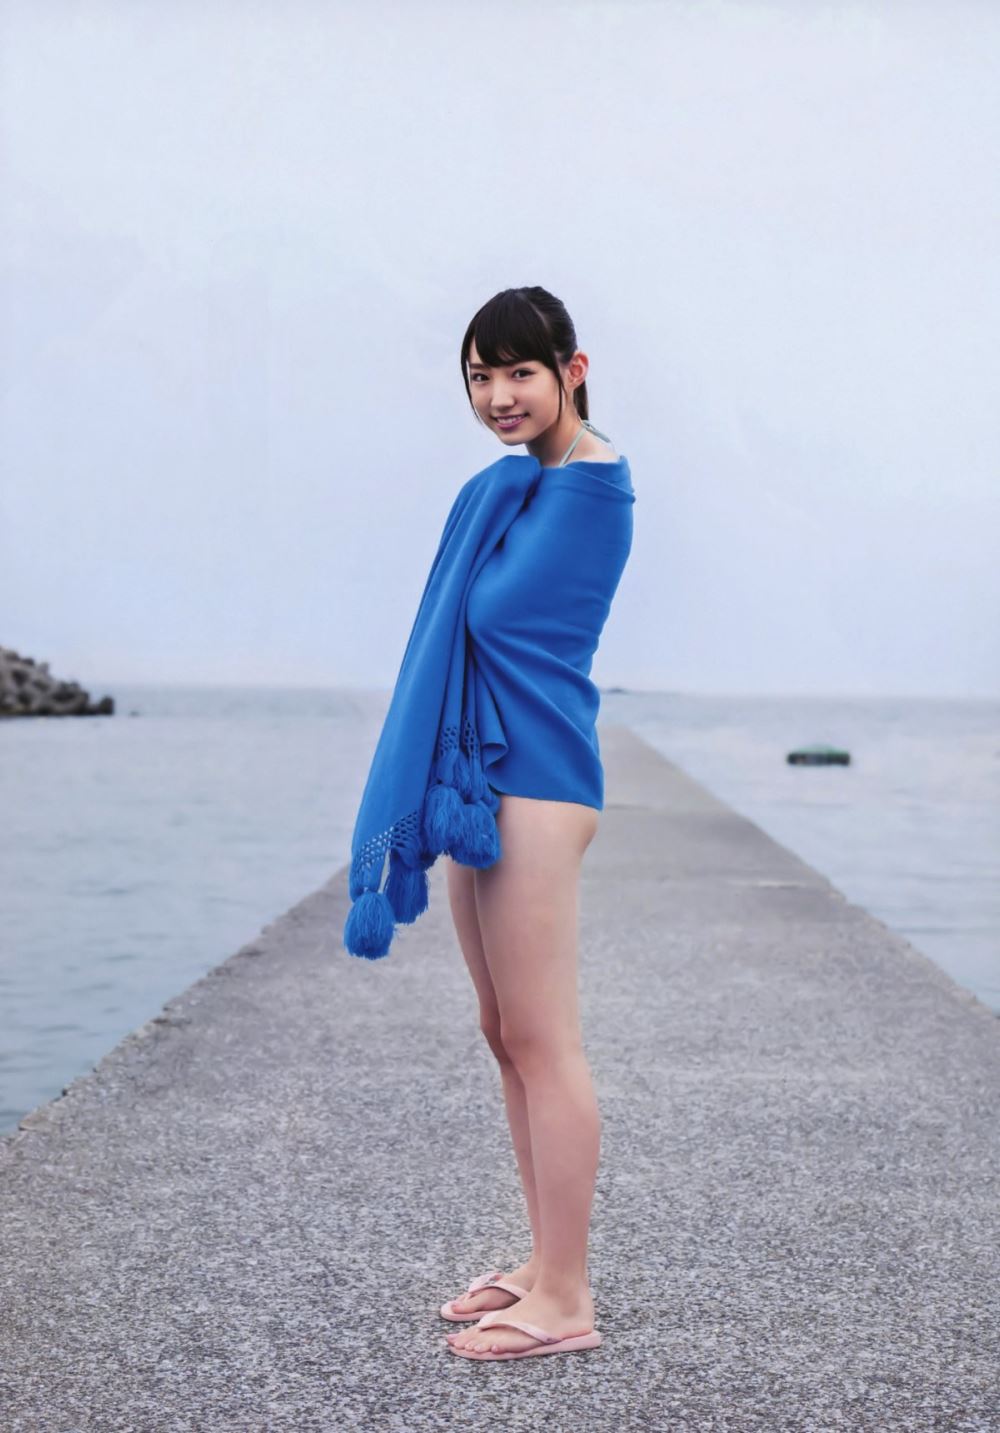 太田夢莉 1万年に1人 可愛い アイドル 水着 画像 25